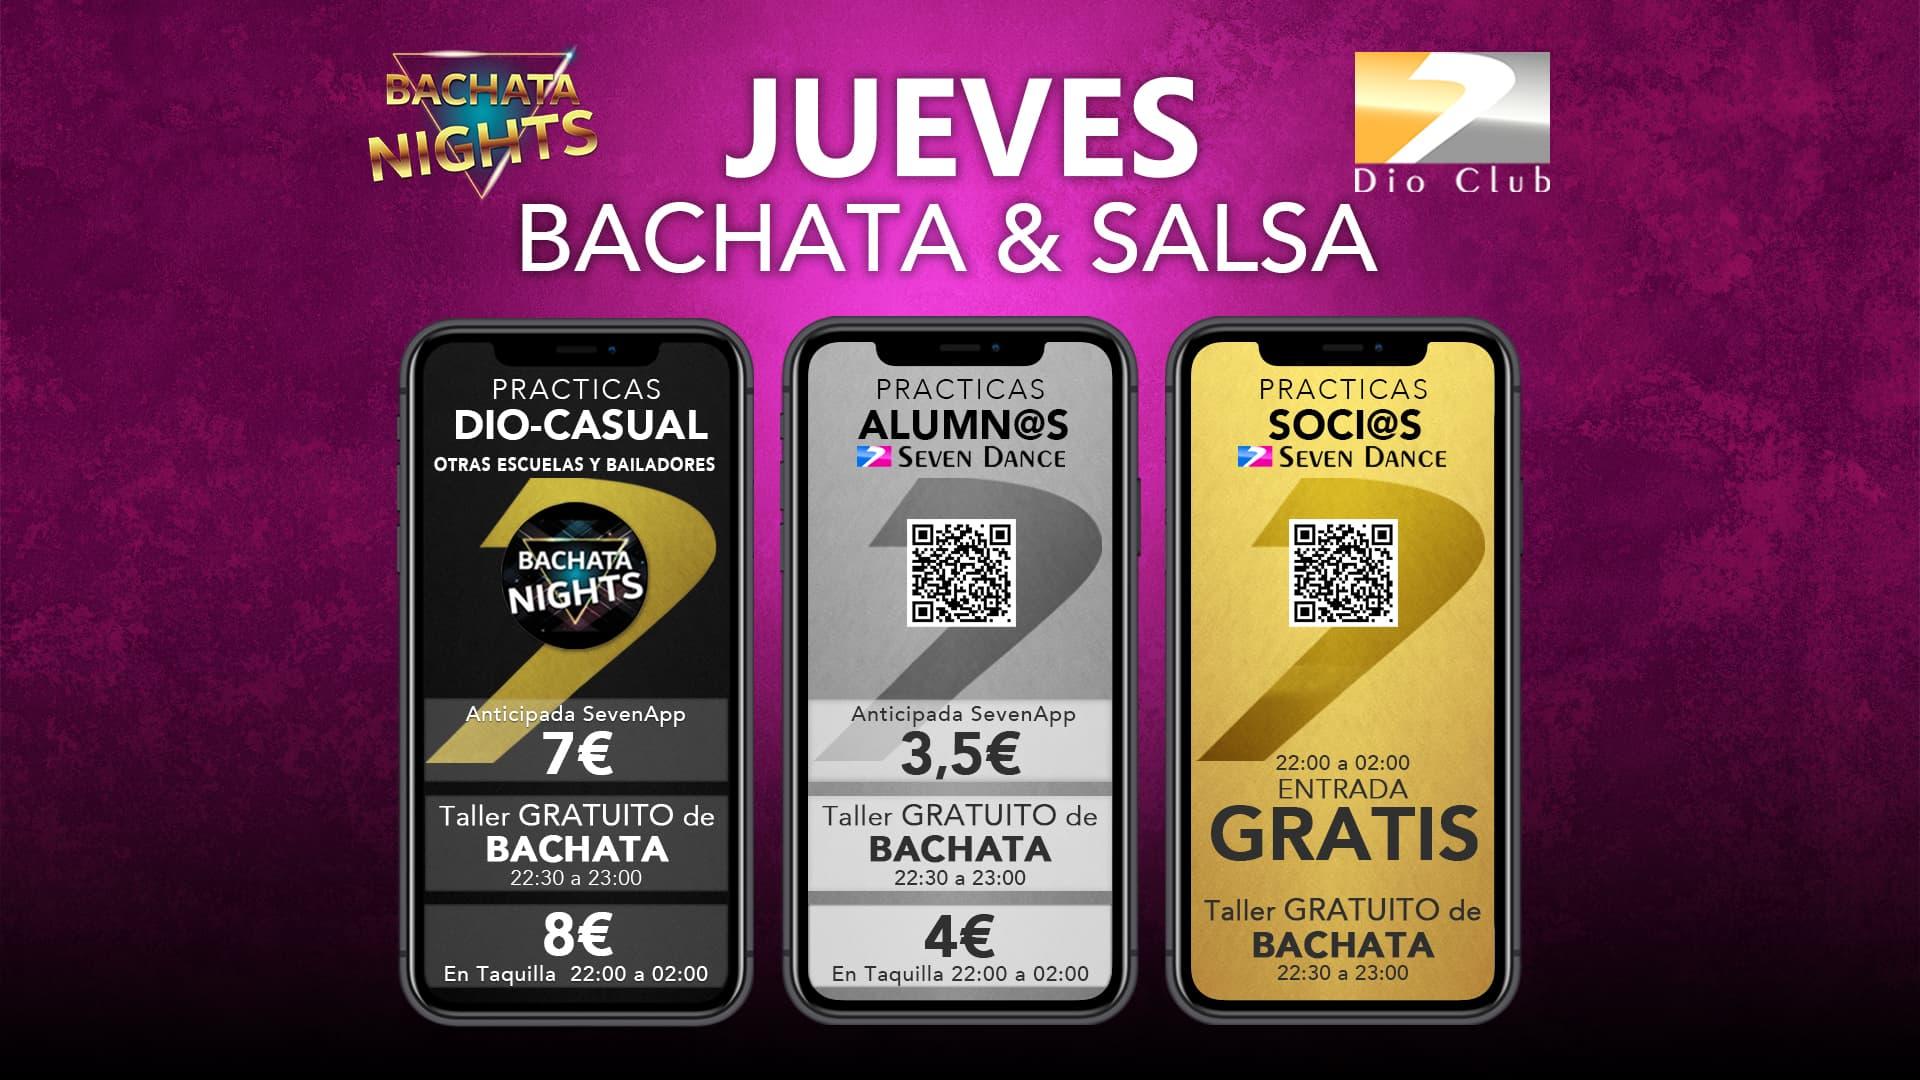 Jueves de Bachata Nights & Dio Club Salsa